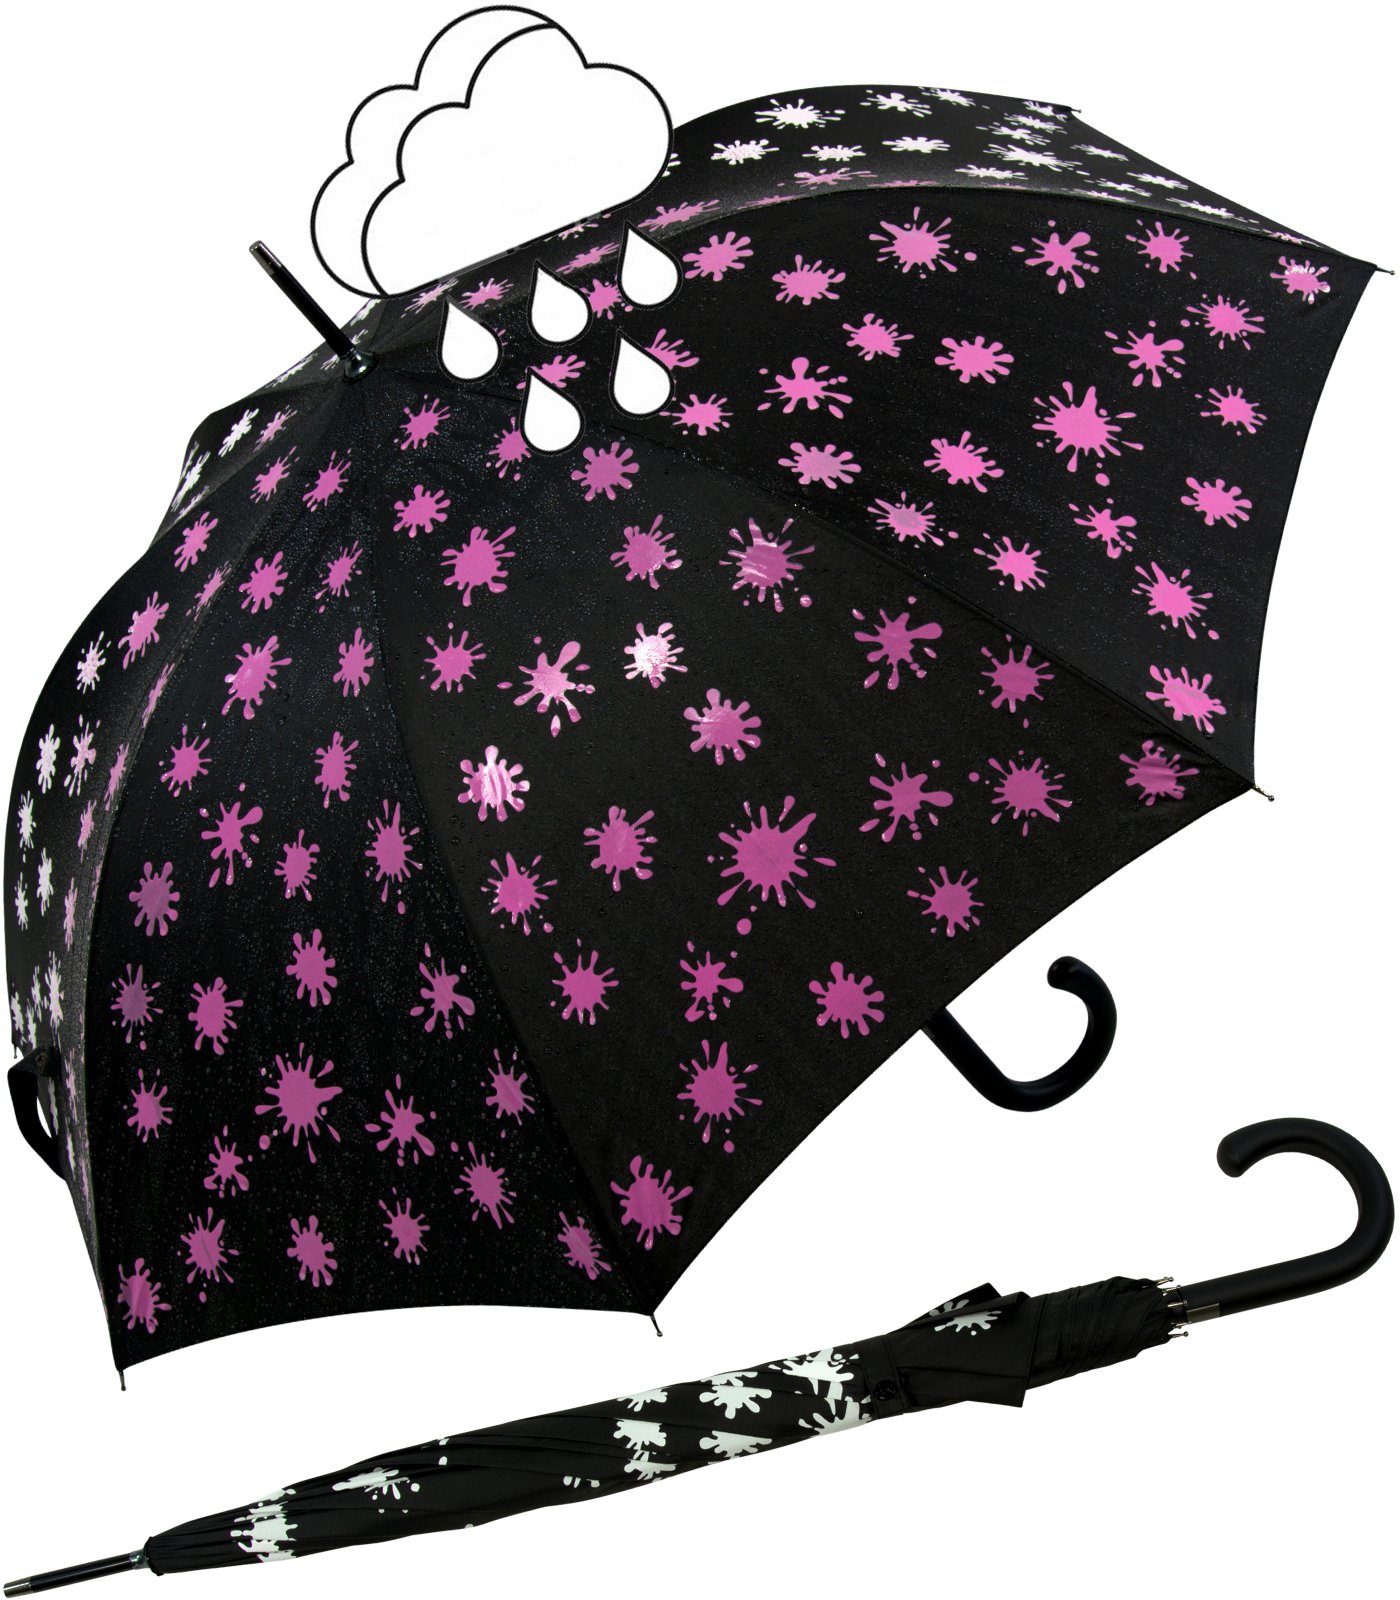 mit iX-brella und neon-pink Print, schwarz-weiß-neonpink Nässe bei - Wet Automatik Langregenschirm Farbkleckse Damenschirm iX-brella Farbänderung